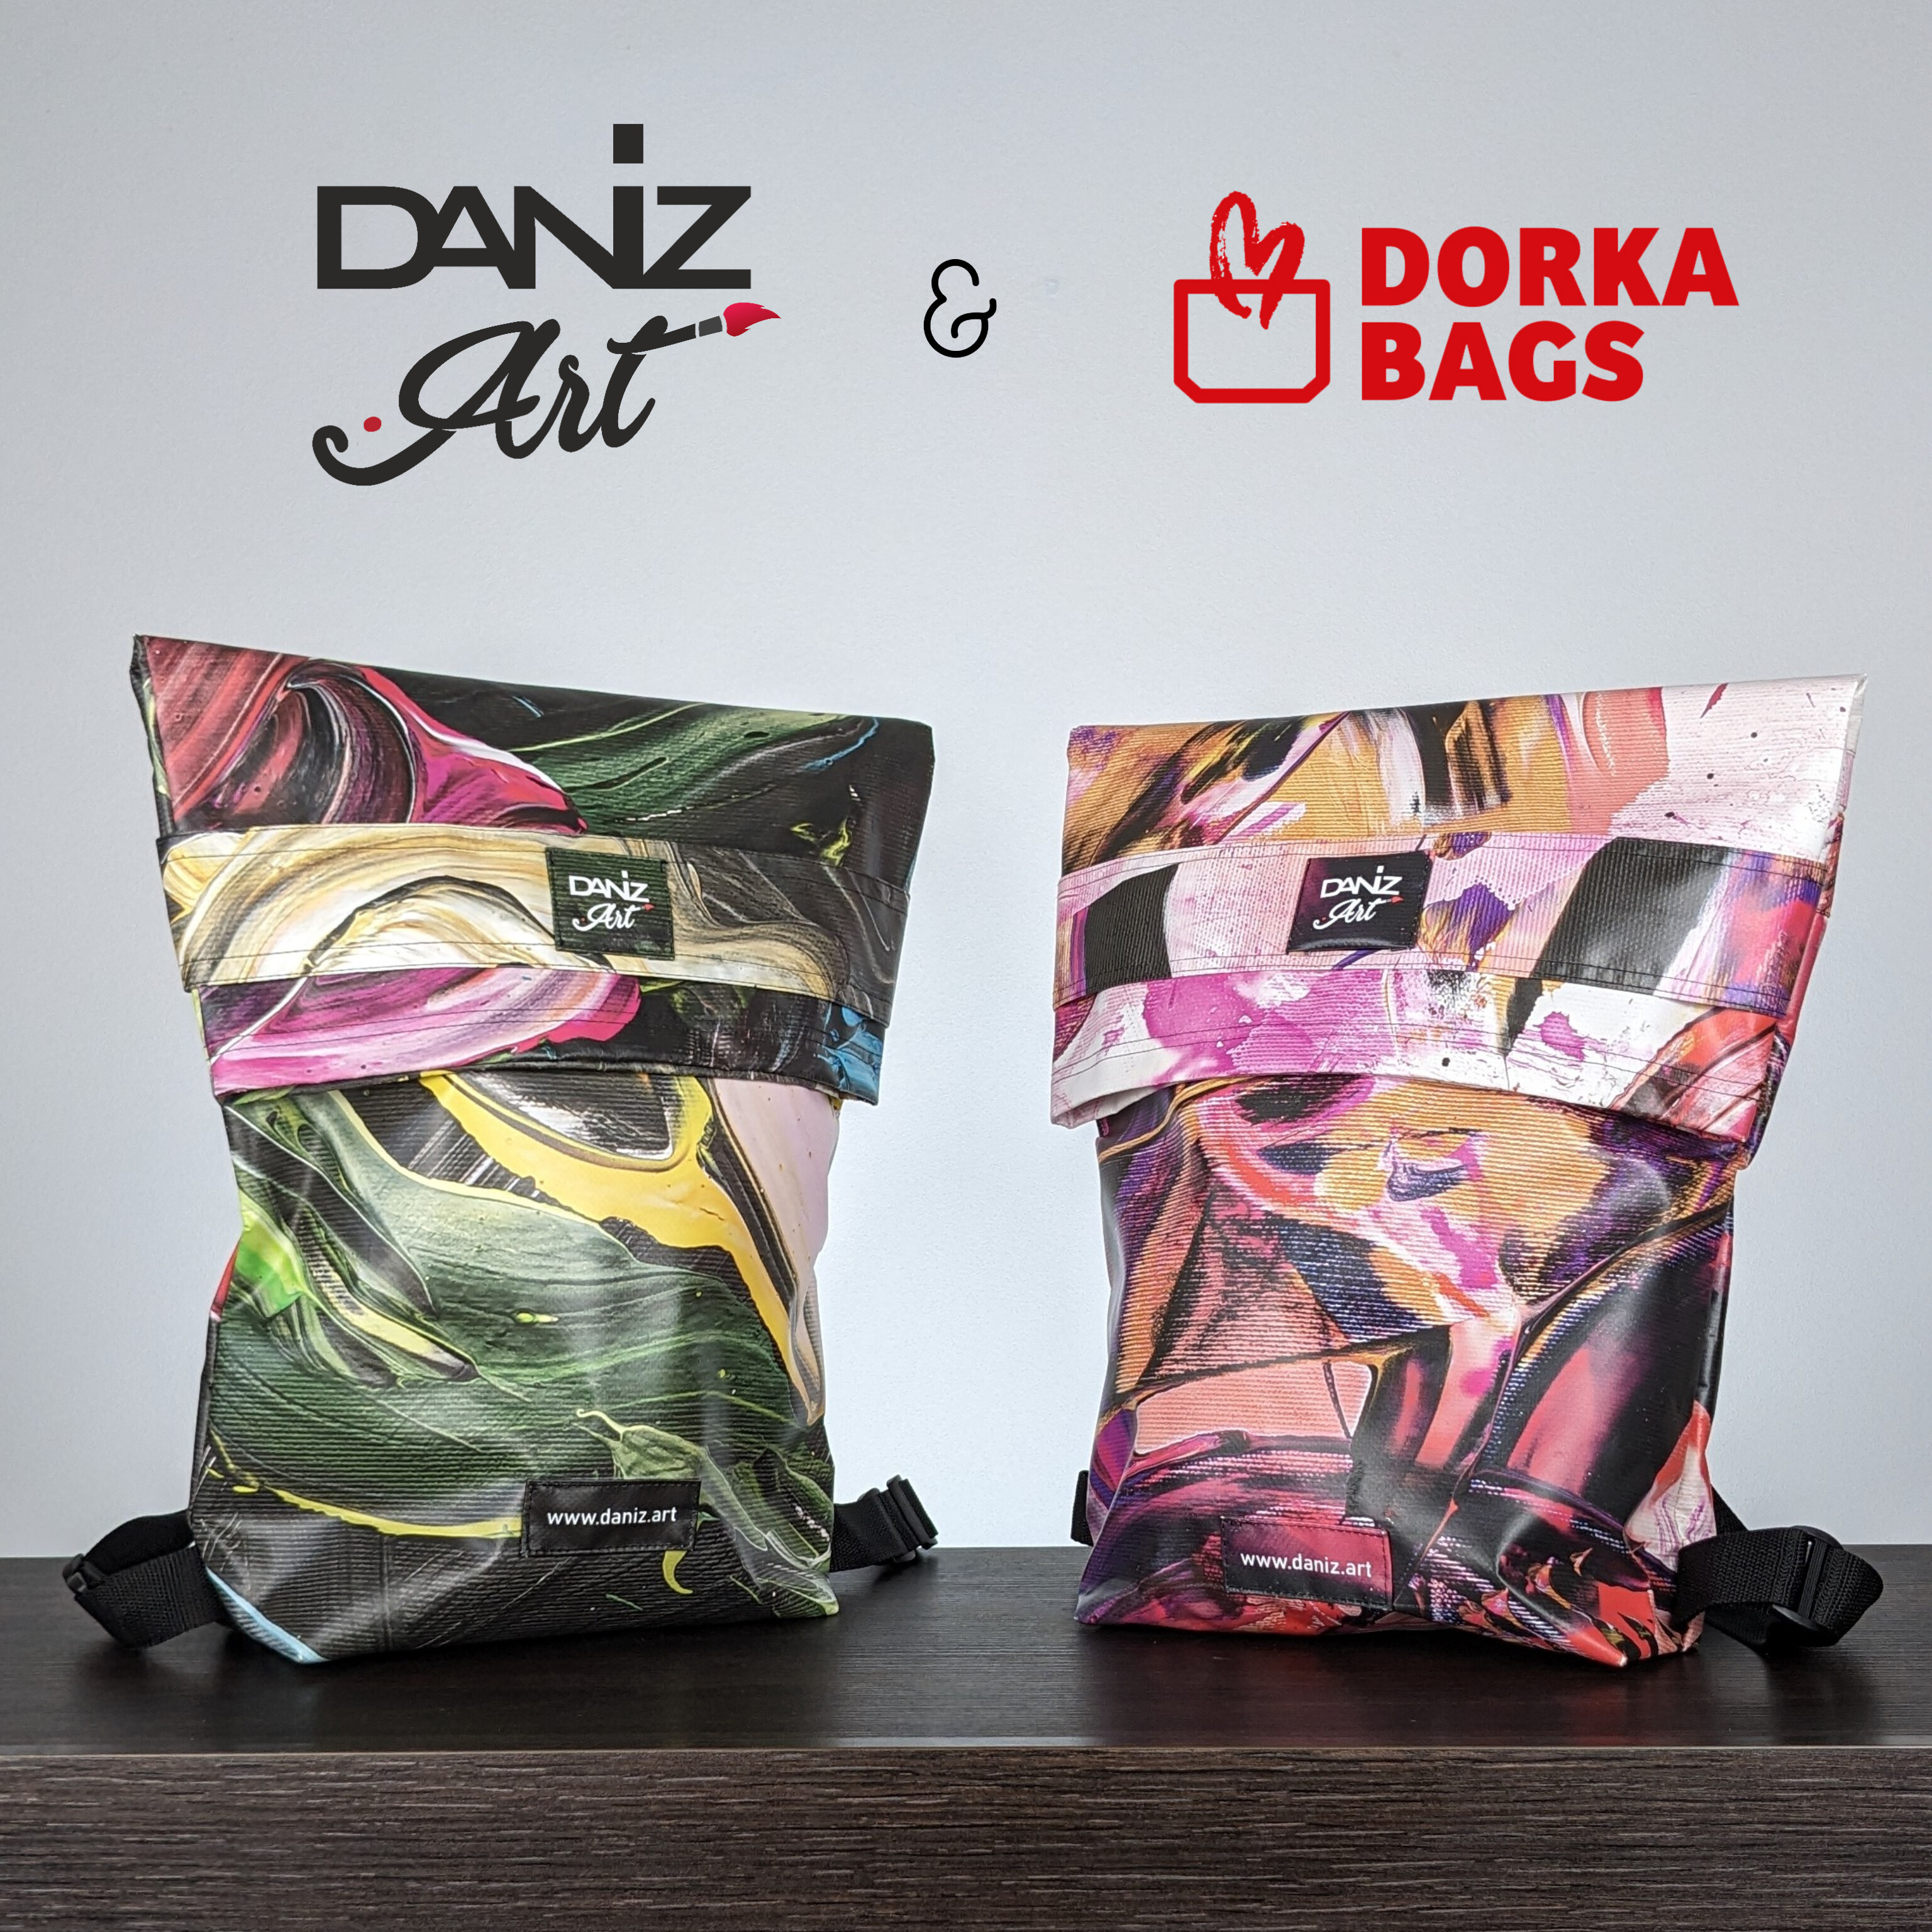 Daniz.art & Dorka bags